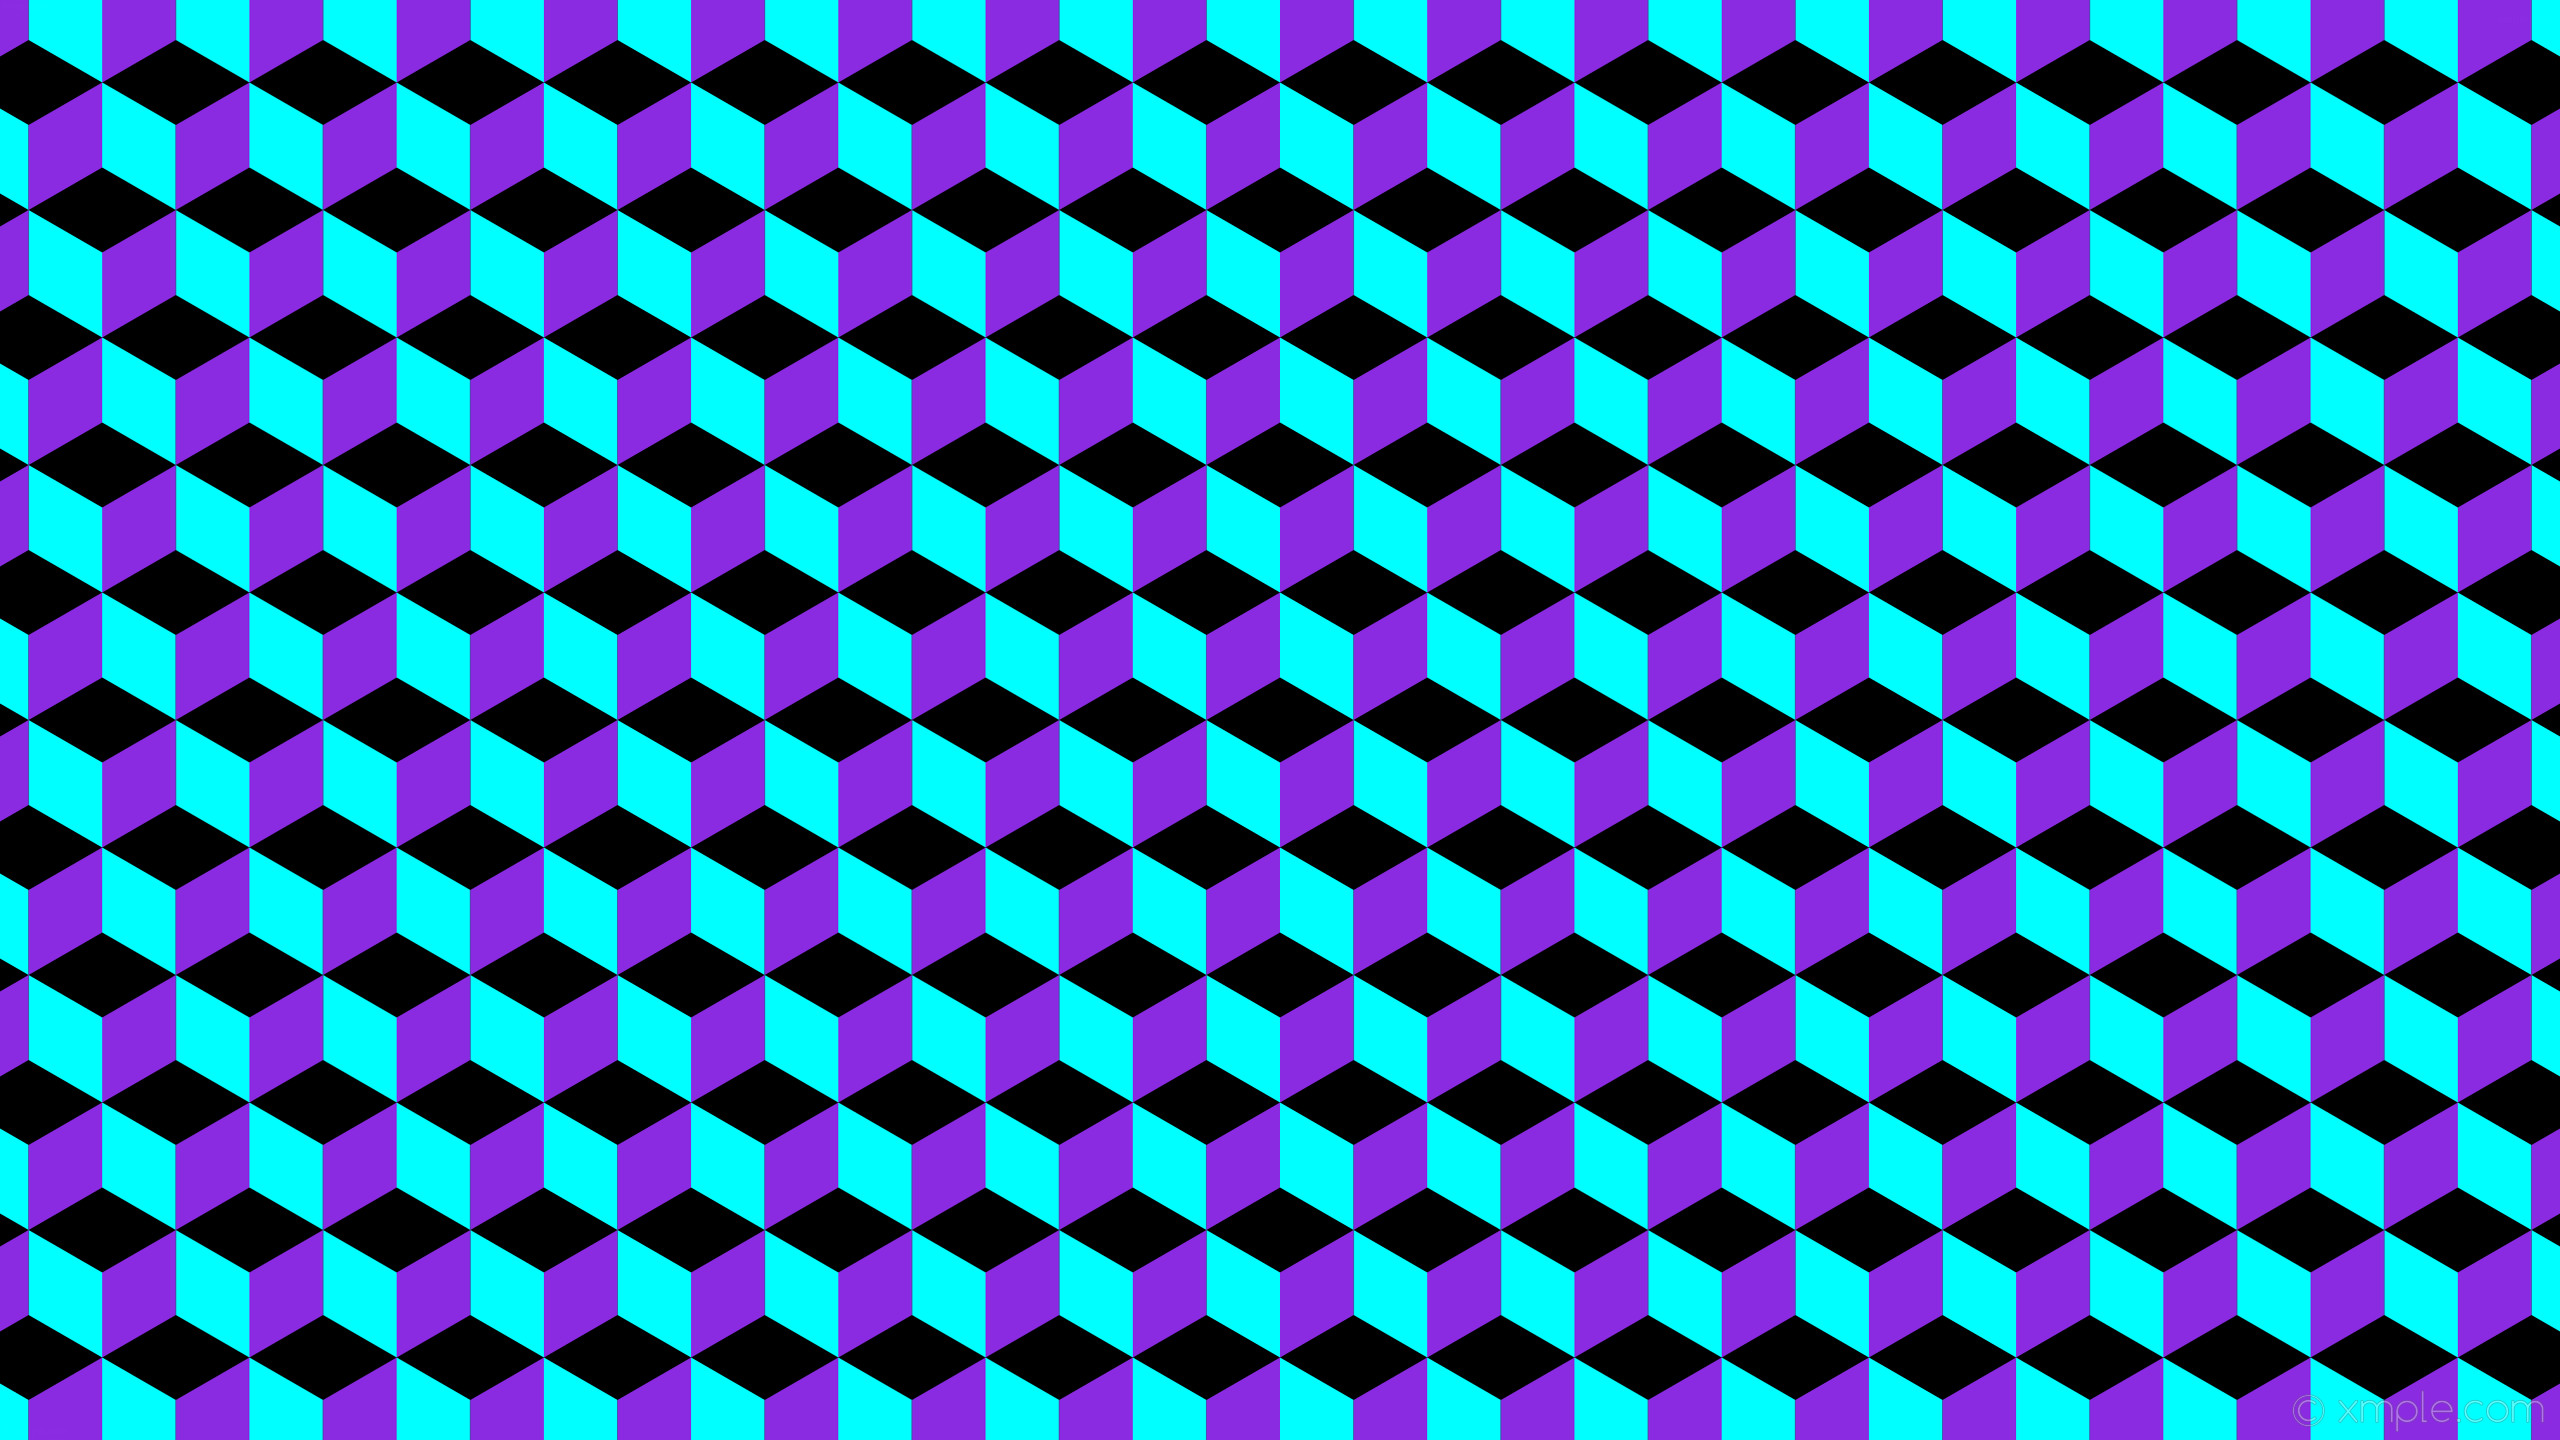 2560x1440 wallpaper purple 3d cubes blue black aqua cyan blue violet #000000 #00ffff  #8a2be2